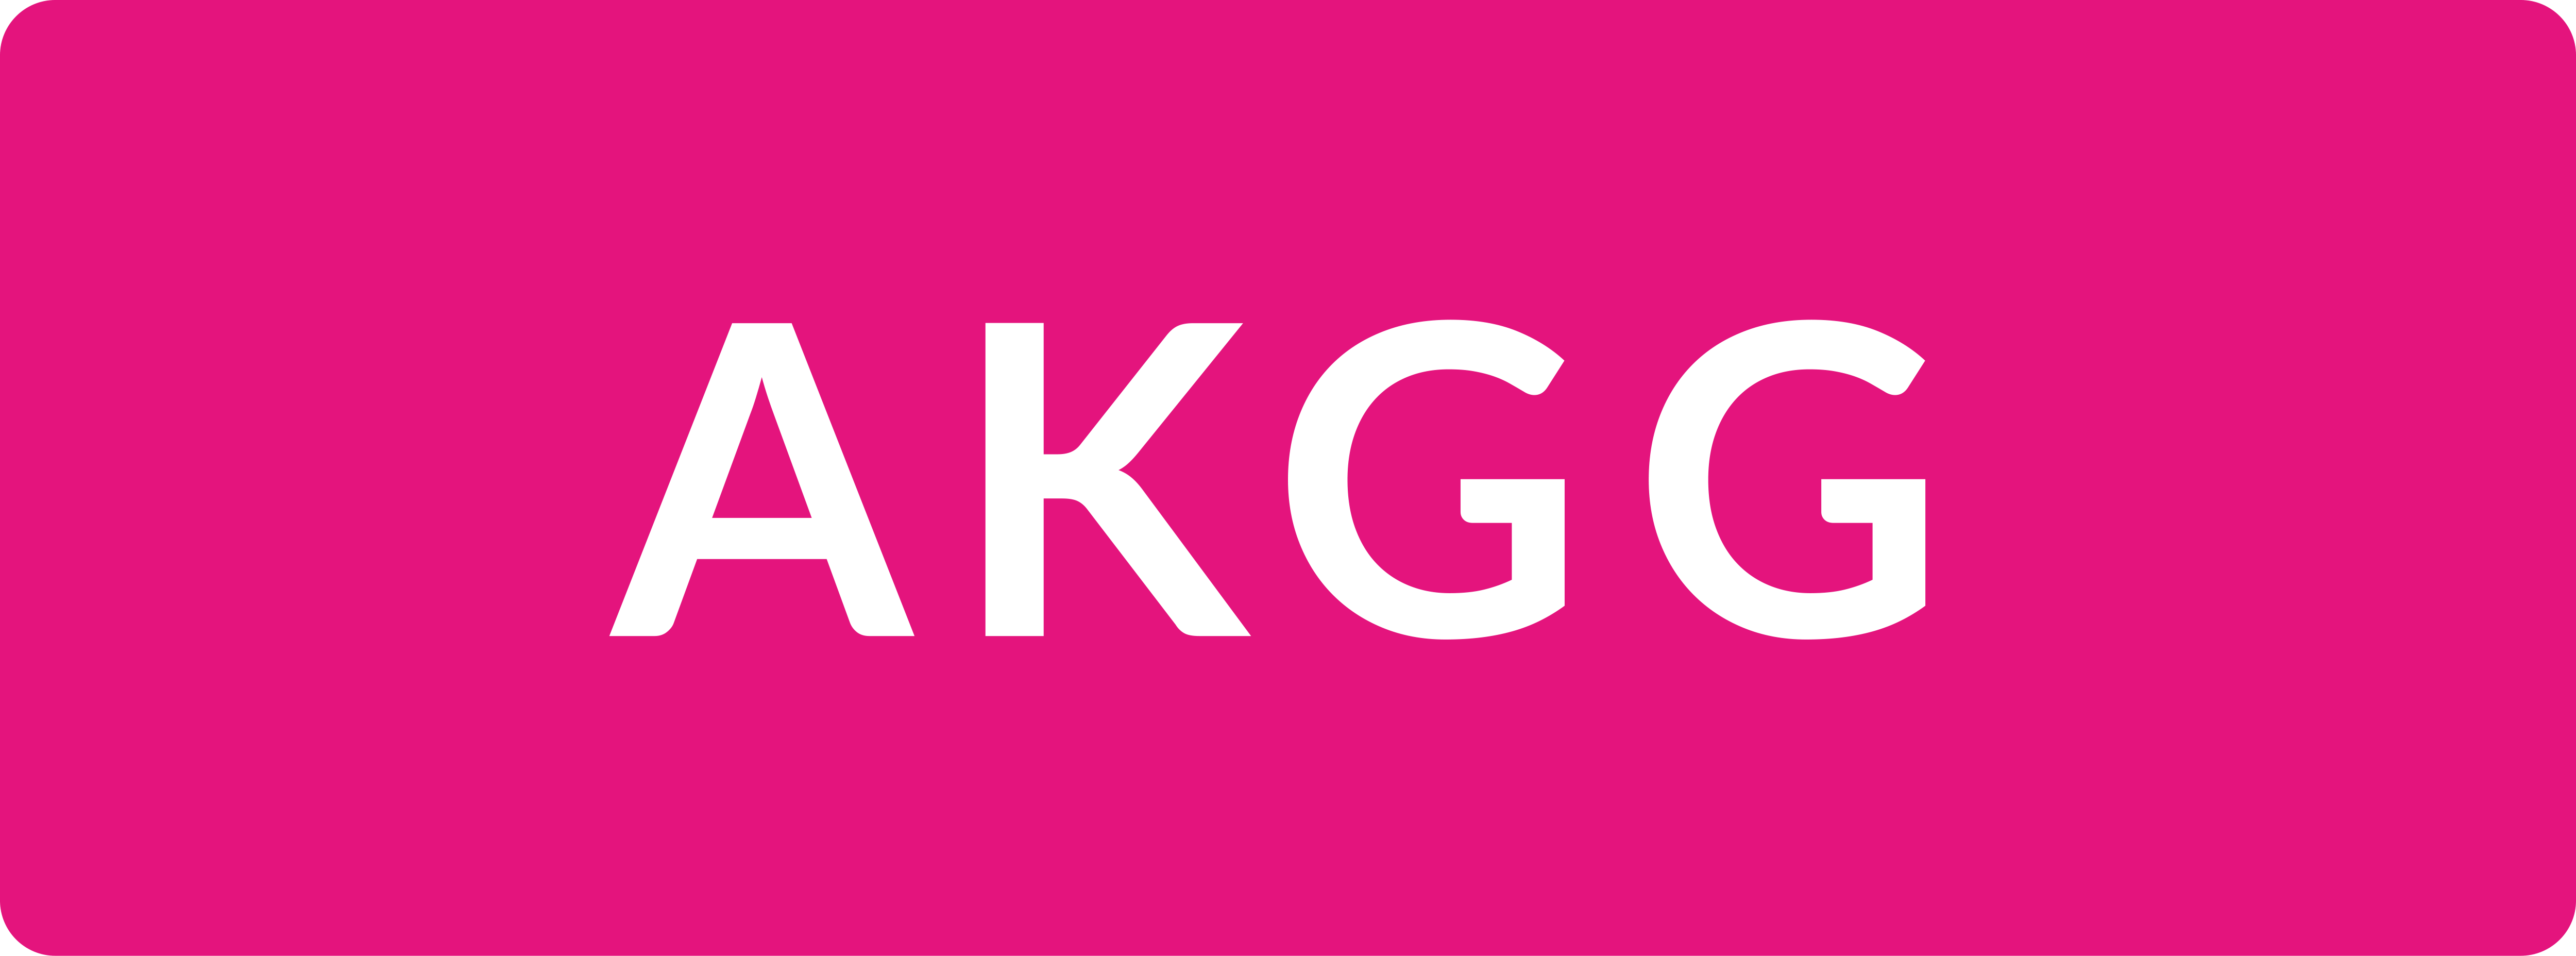 akgg logo